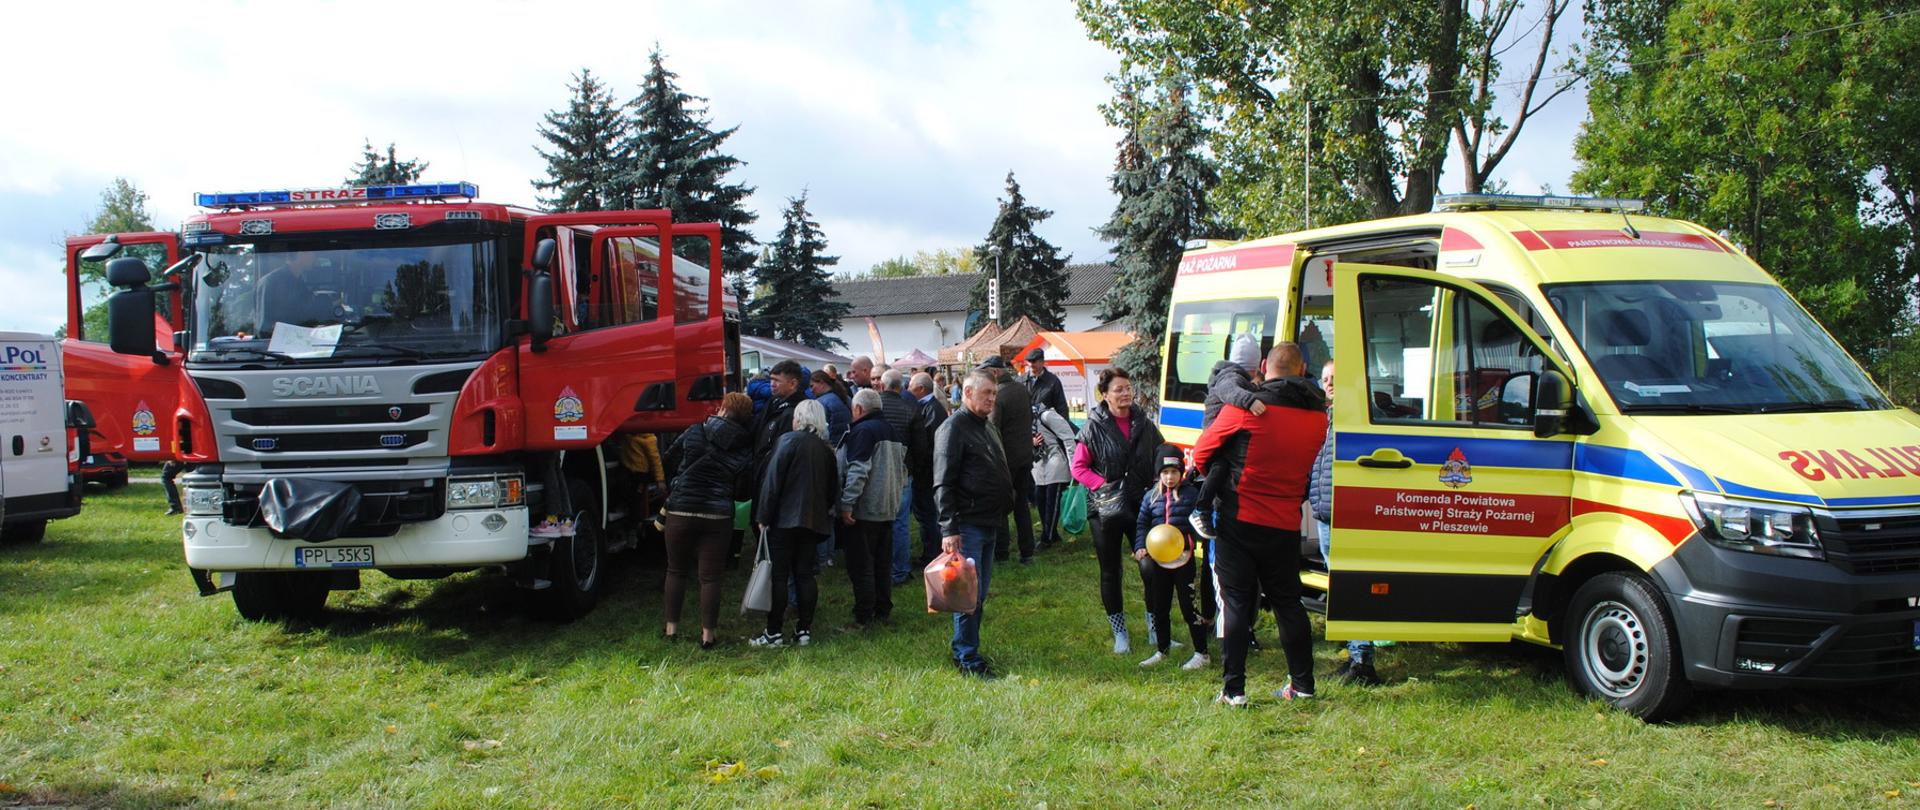 Ciężki wóz gaśniczy oraz karteka ratunkowa pleszewskiech strażaków stoją przodem, pomiędzy nimi widać tłum ludzi przyglądających się wystawionemu sprzętowi